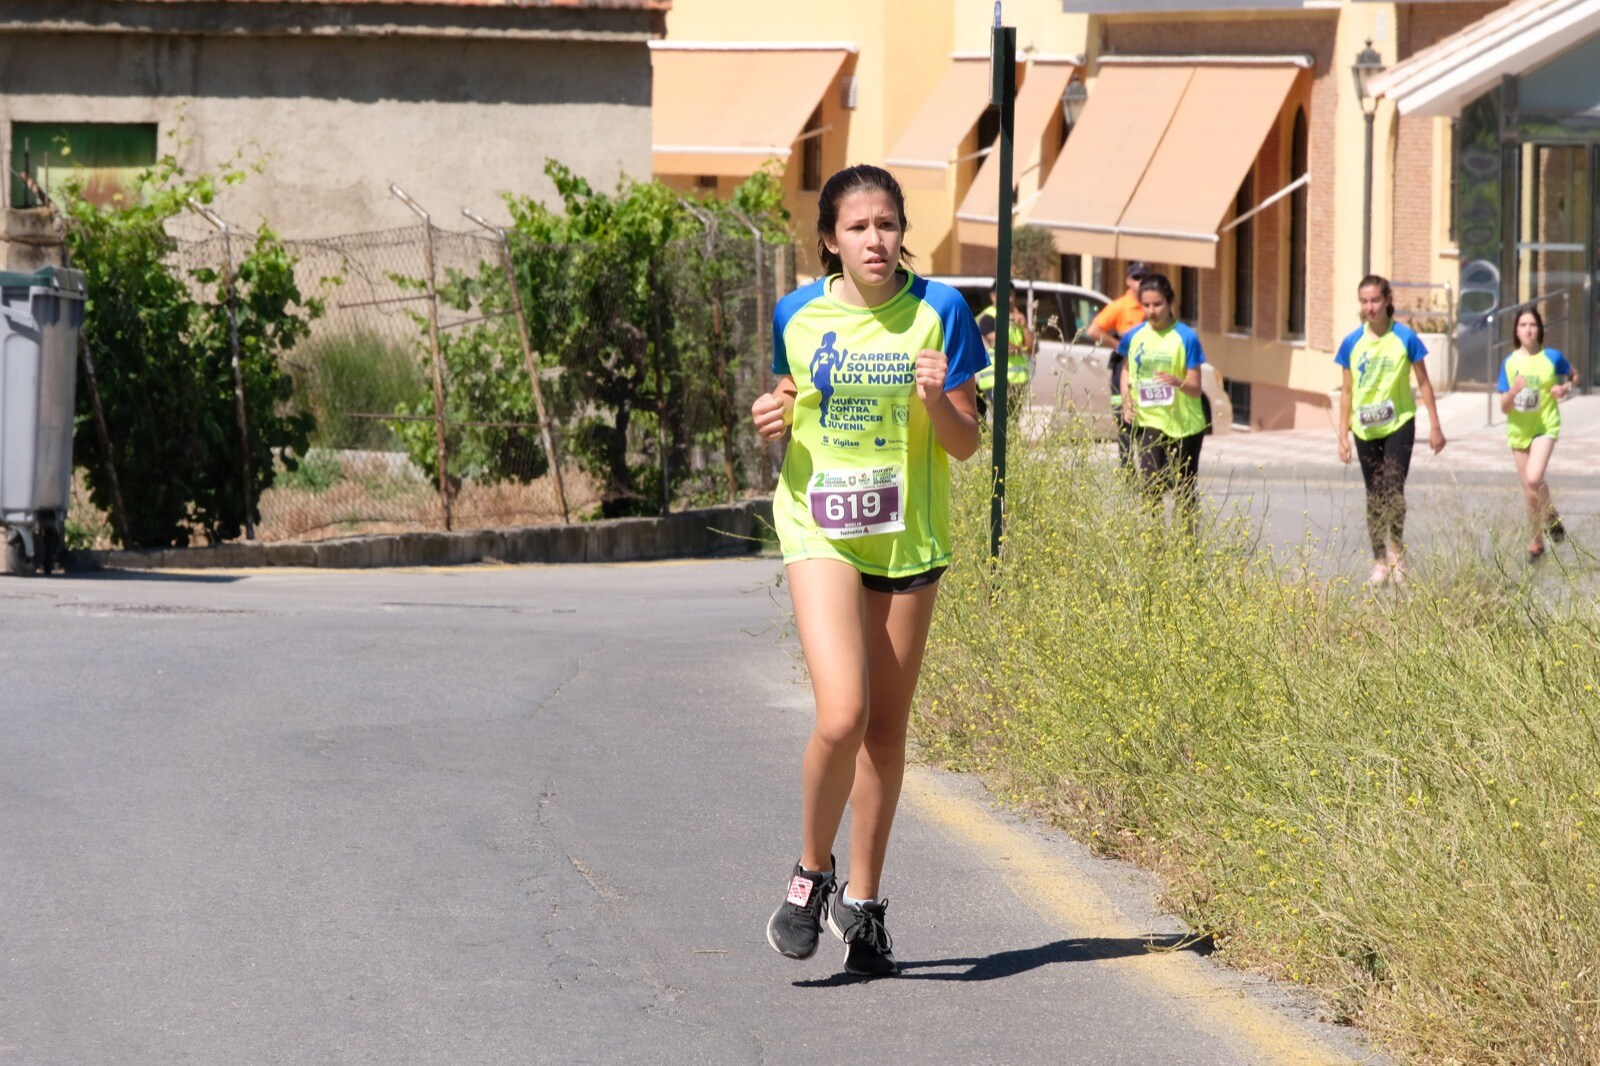 Con modalidades infantiles, una march-carrera y una prueba absoluta de 7 kilómetros, la carrera solidaria de Cájar ha celebrado su segunda edición con un gran ambiente